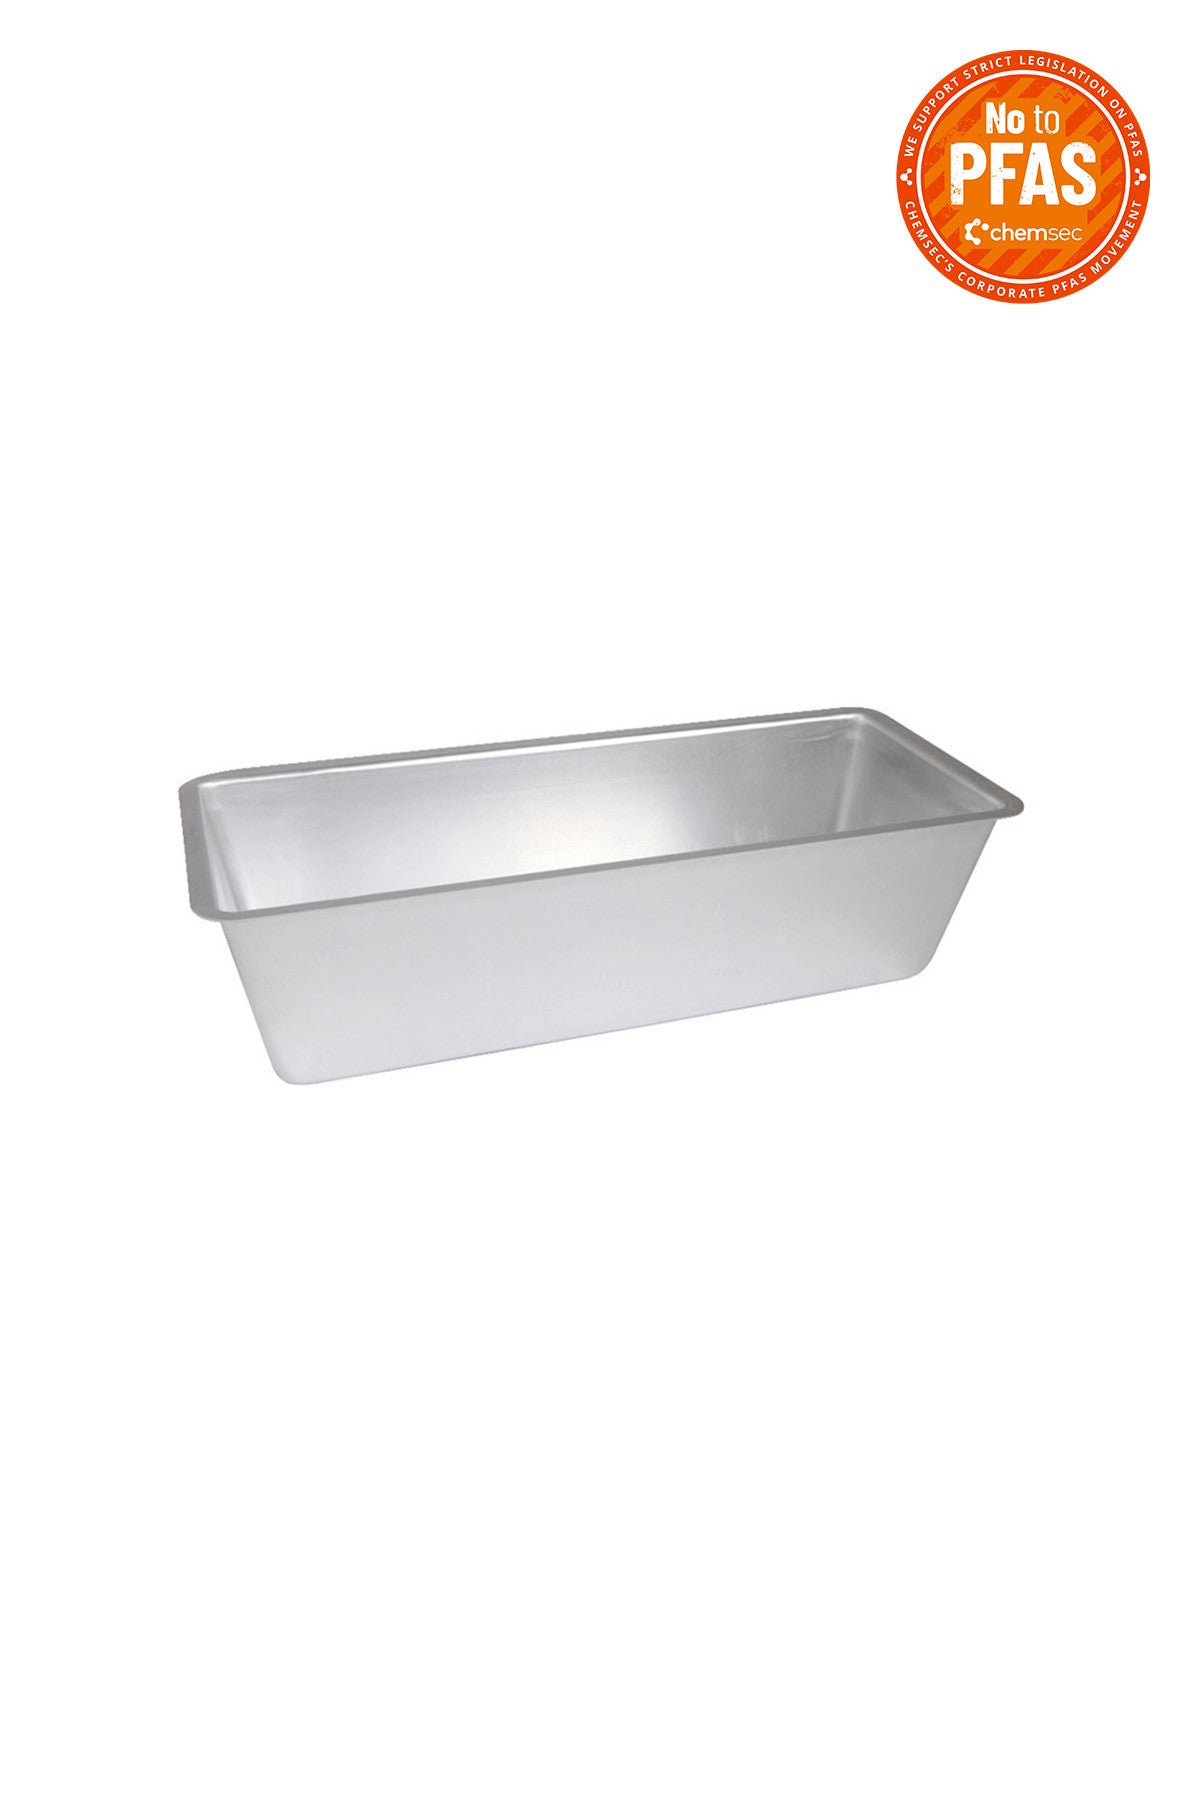 BREAD PAN aluminium 26 cm 1,5 L